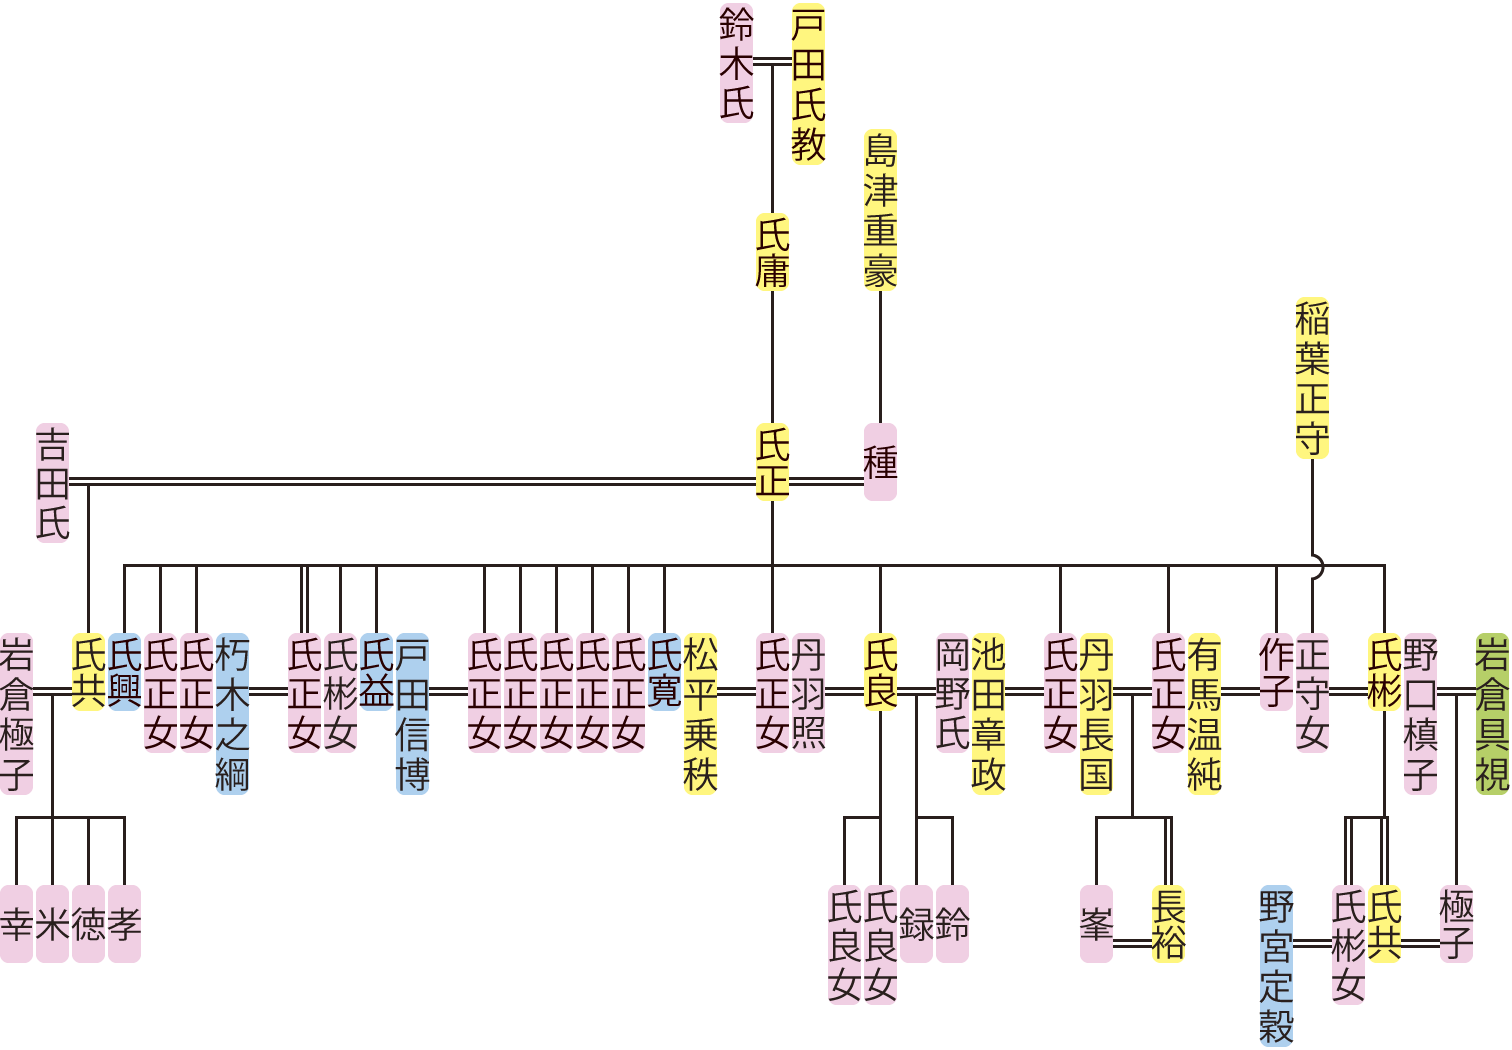 戸田氏正～氏共の系図